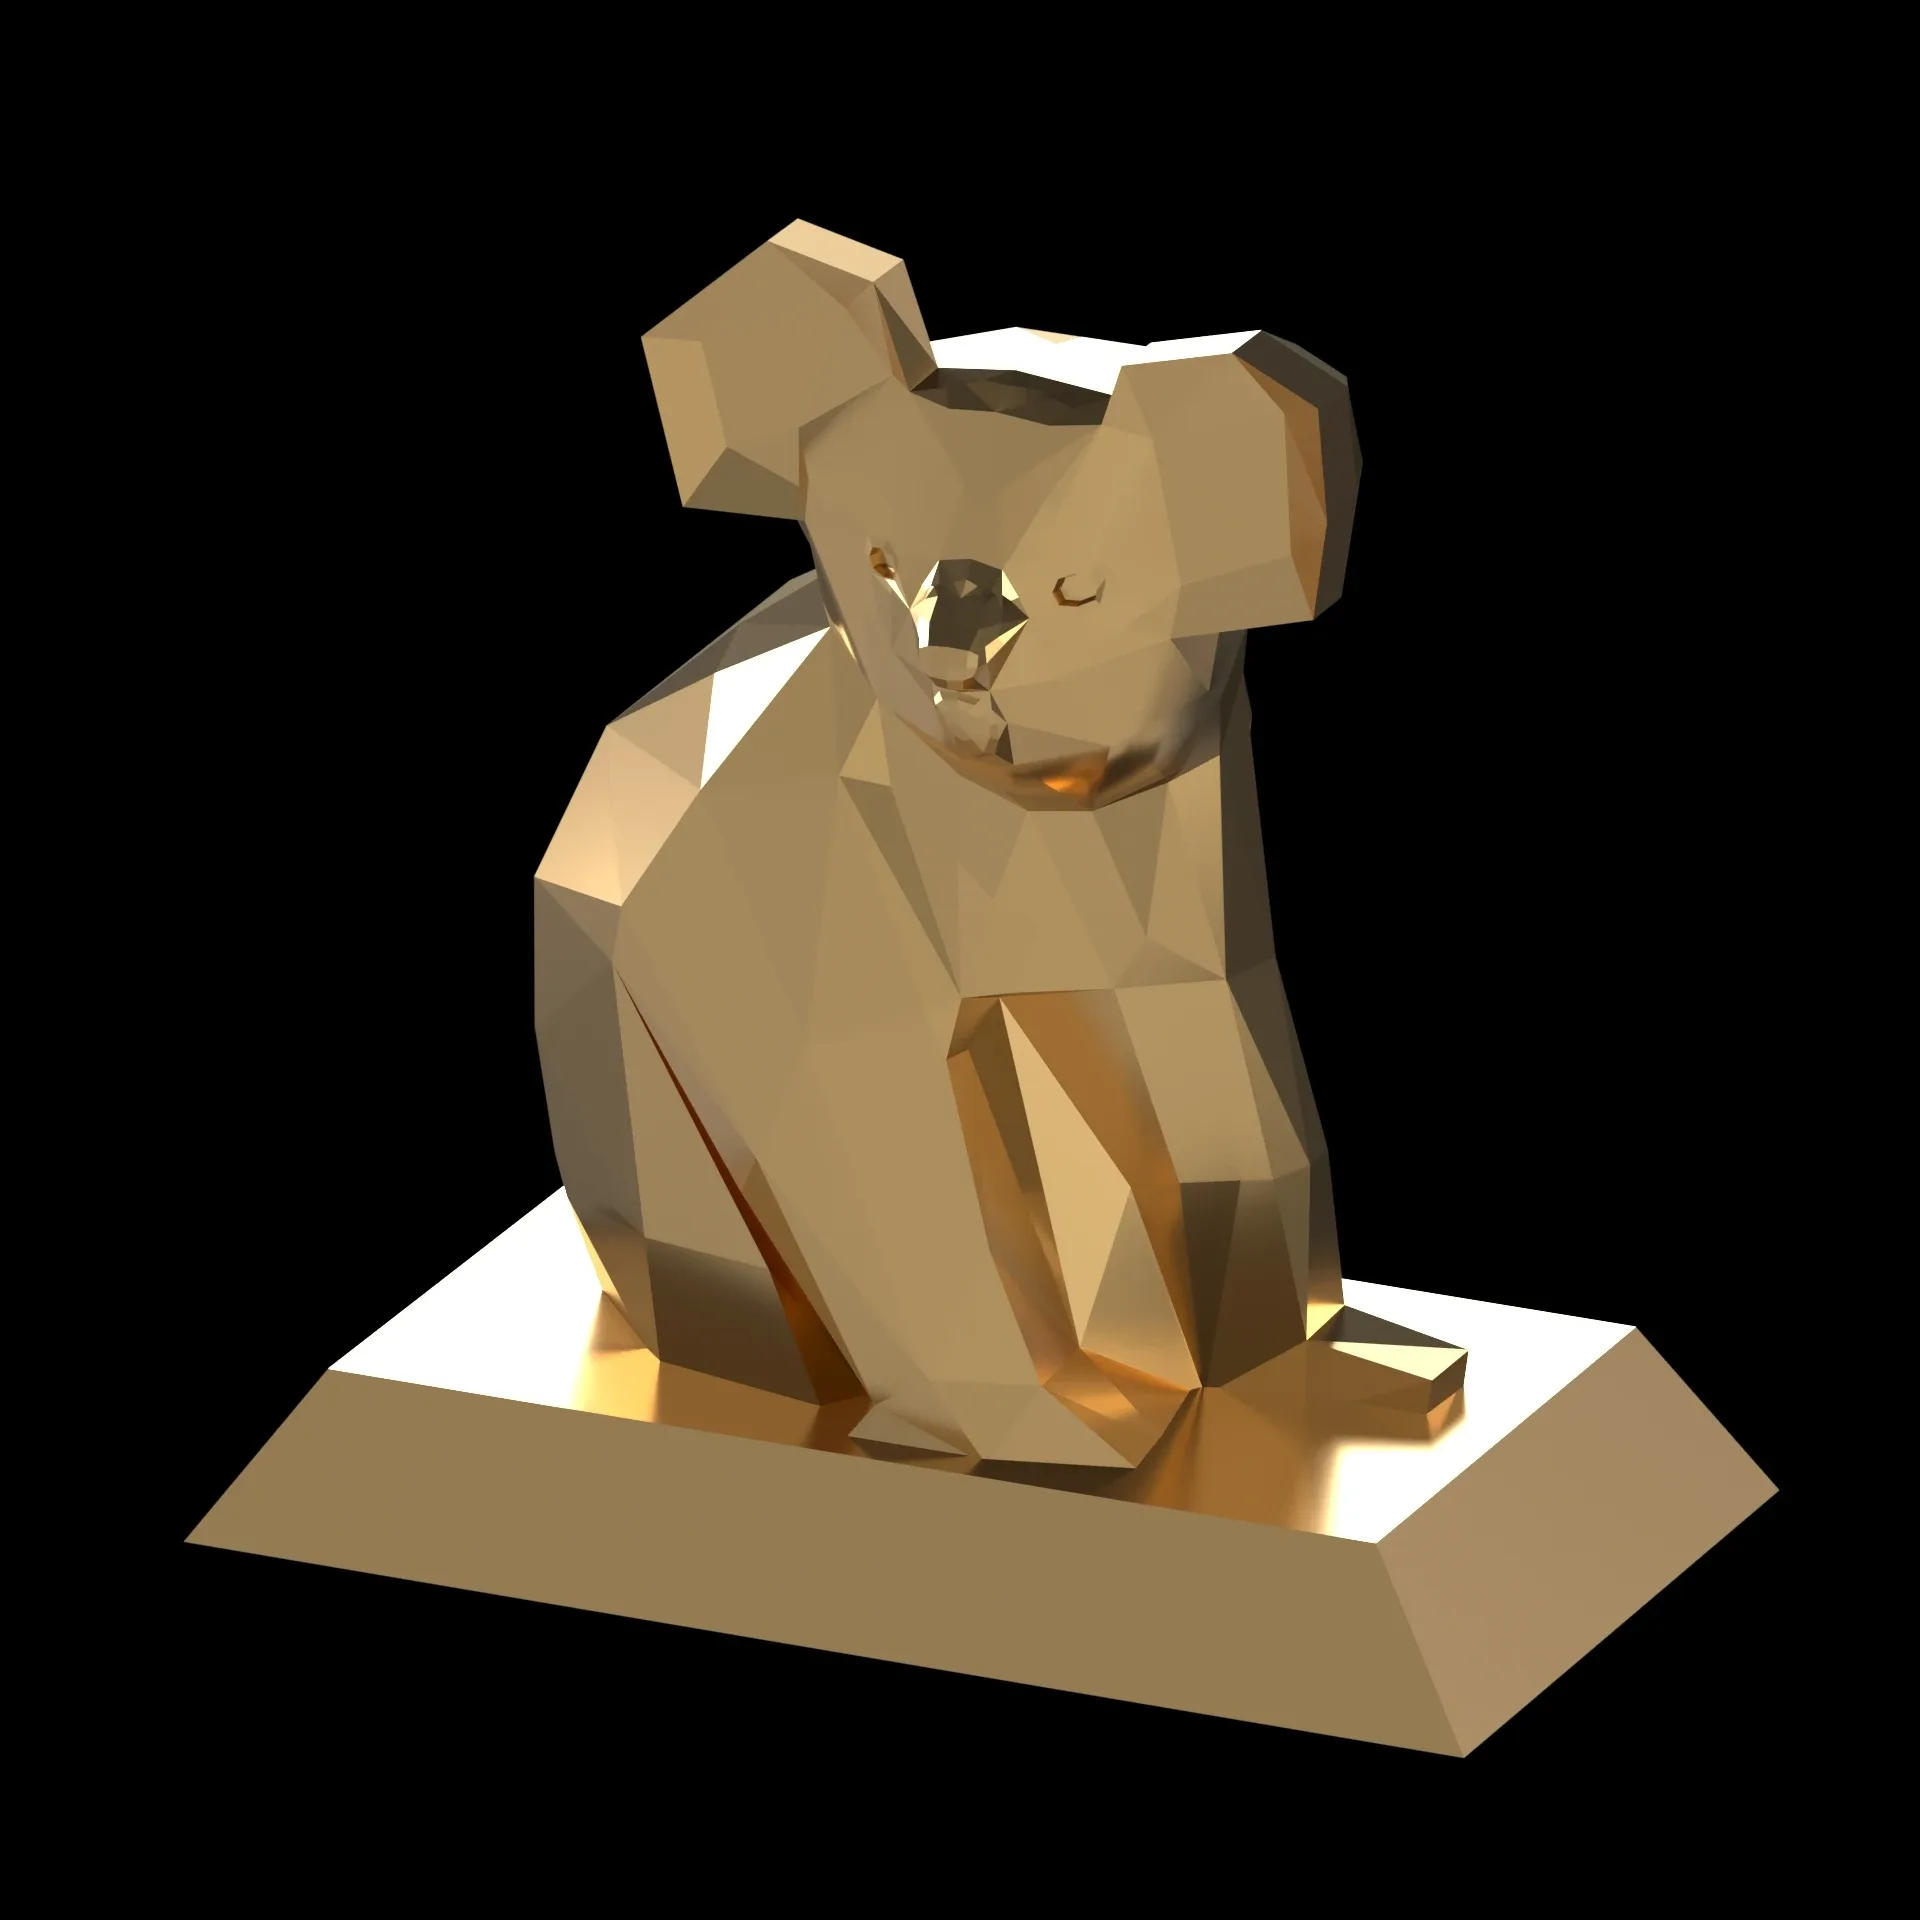 Koala bear sculptrure 3Dmodel lowpoly